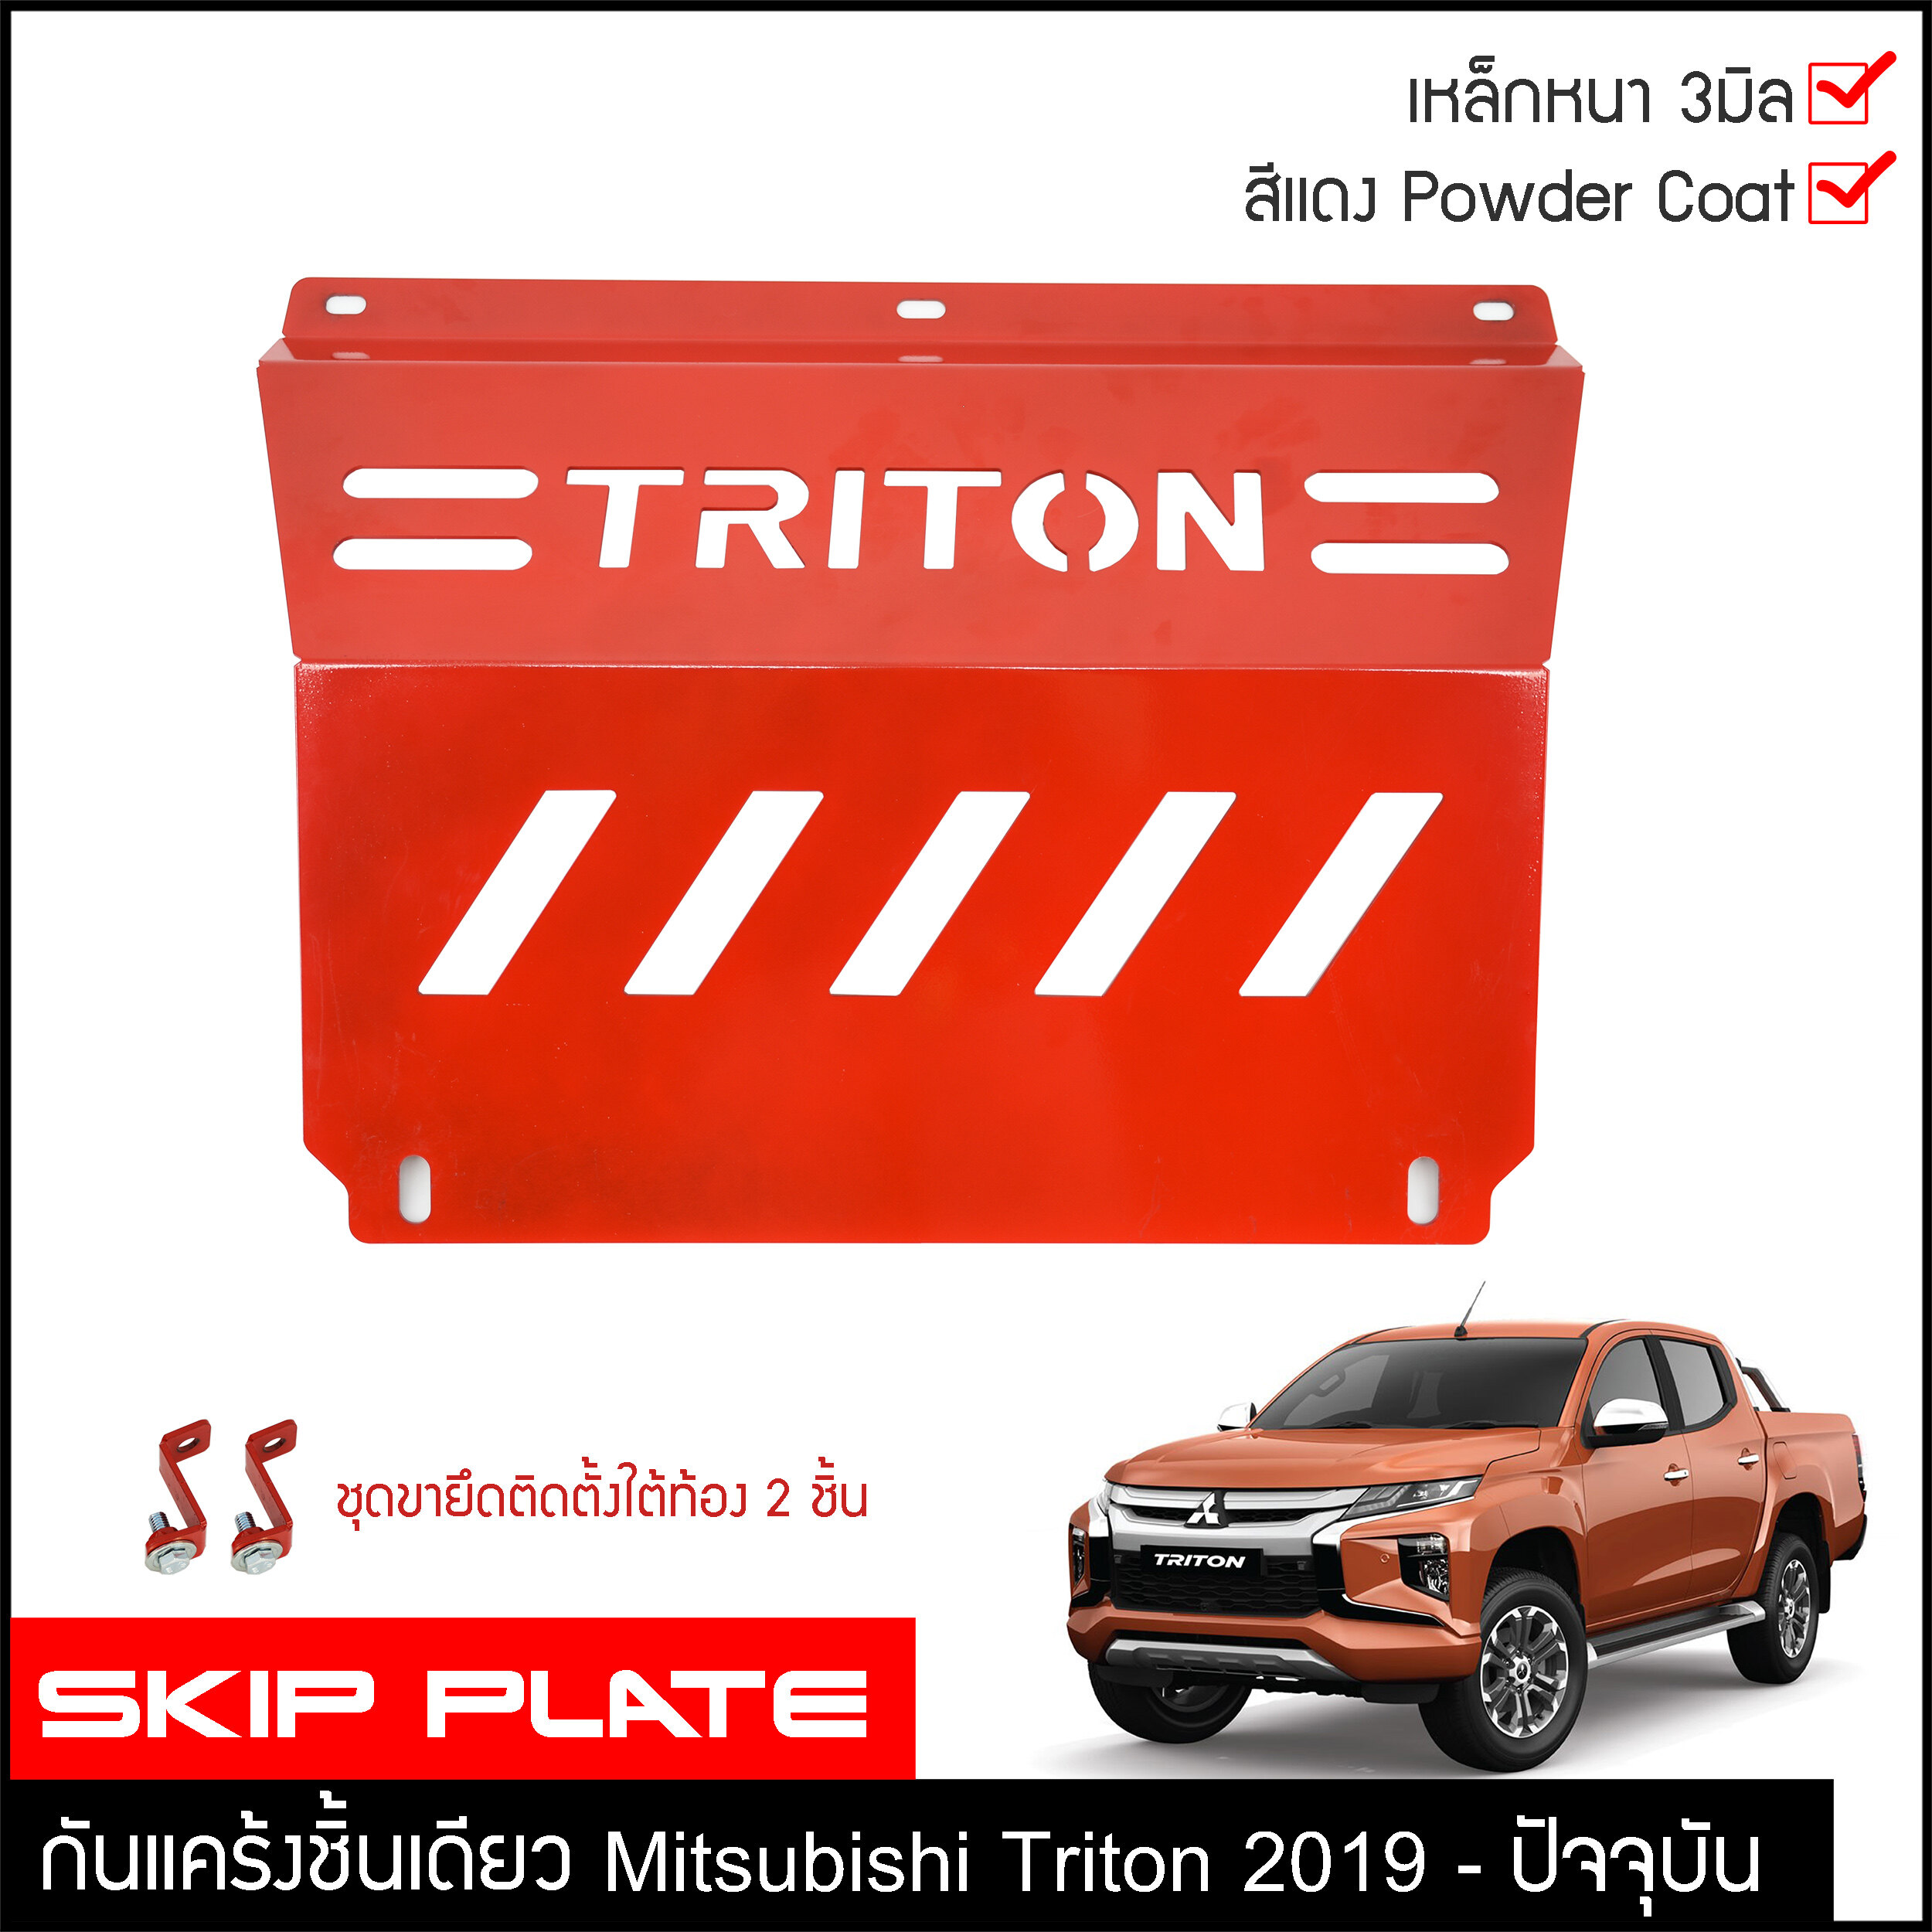 กันแคร้ง Triton 2019 กันแคร้ง กันแค้ง แค้ง กันกระแทรก กันรอย ใต้เครื่อง Mitsubishi Triton 2019-2020 สีแดง กันใต้ท้องรถ ไทรทัน ไทรตันท์ ชุดแต่งออฟโรด4x4